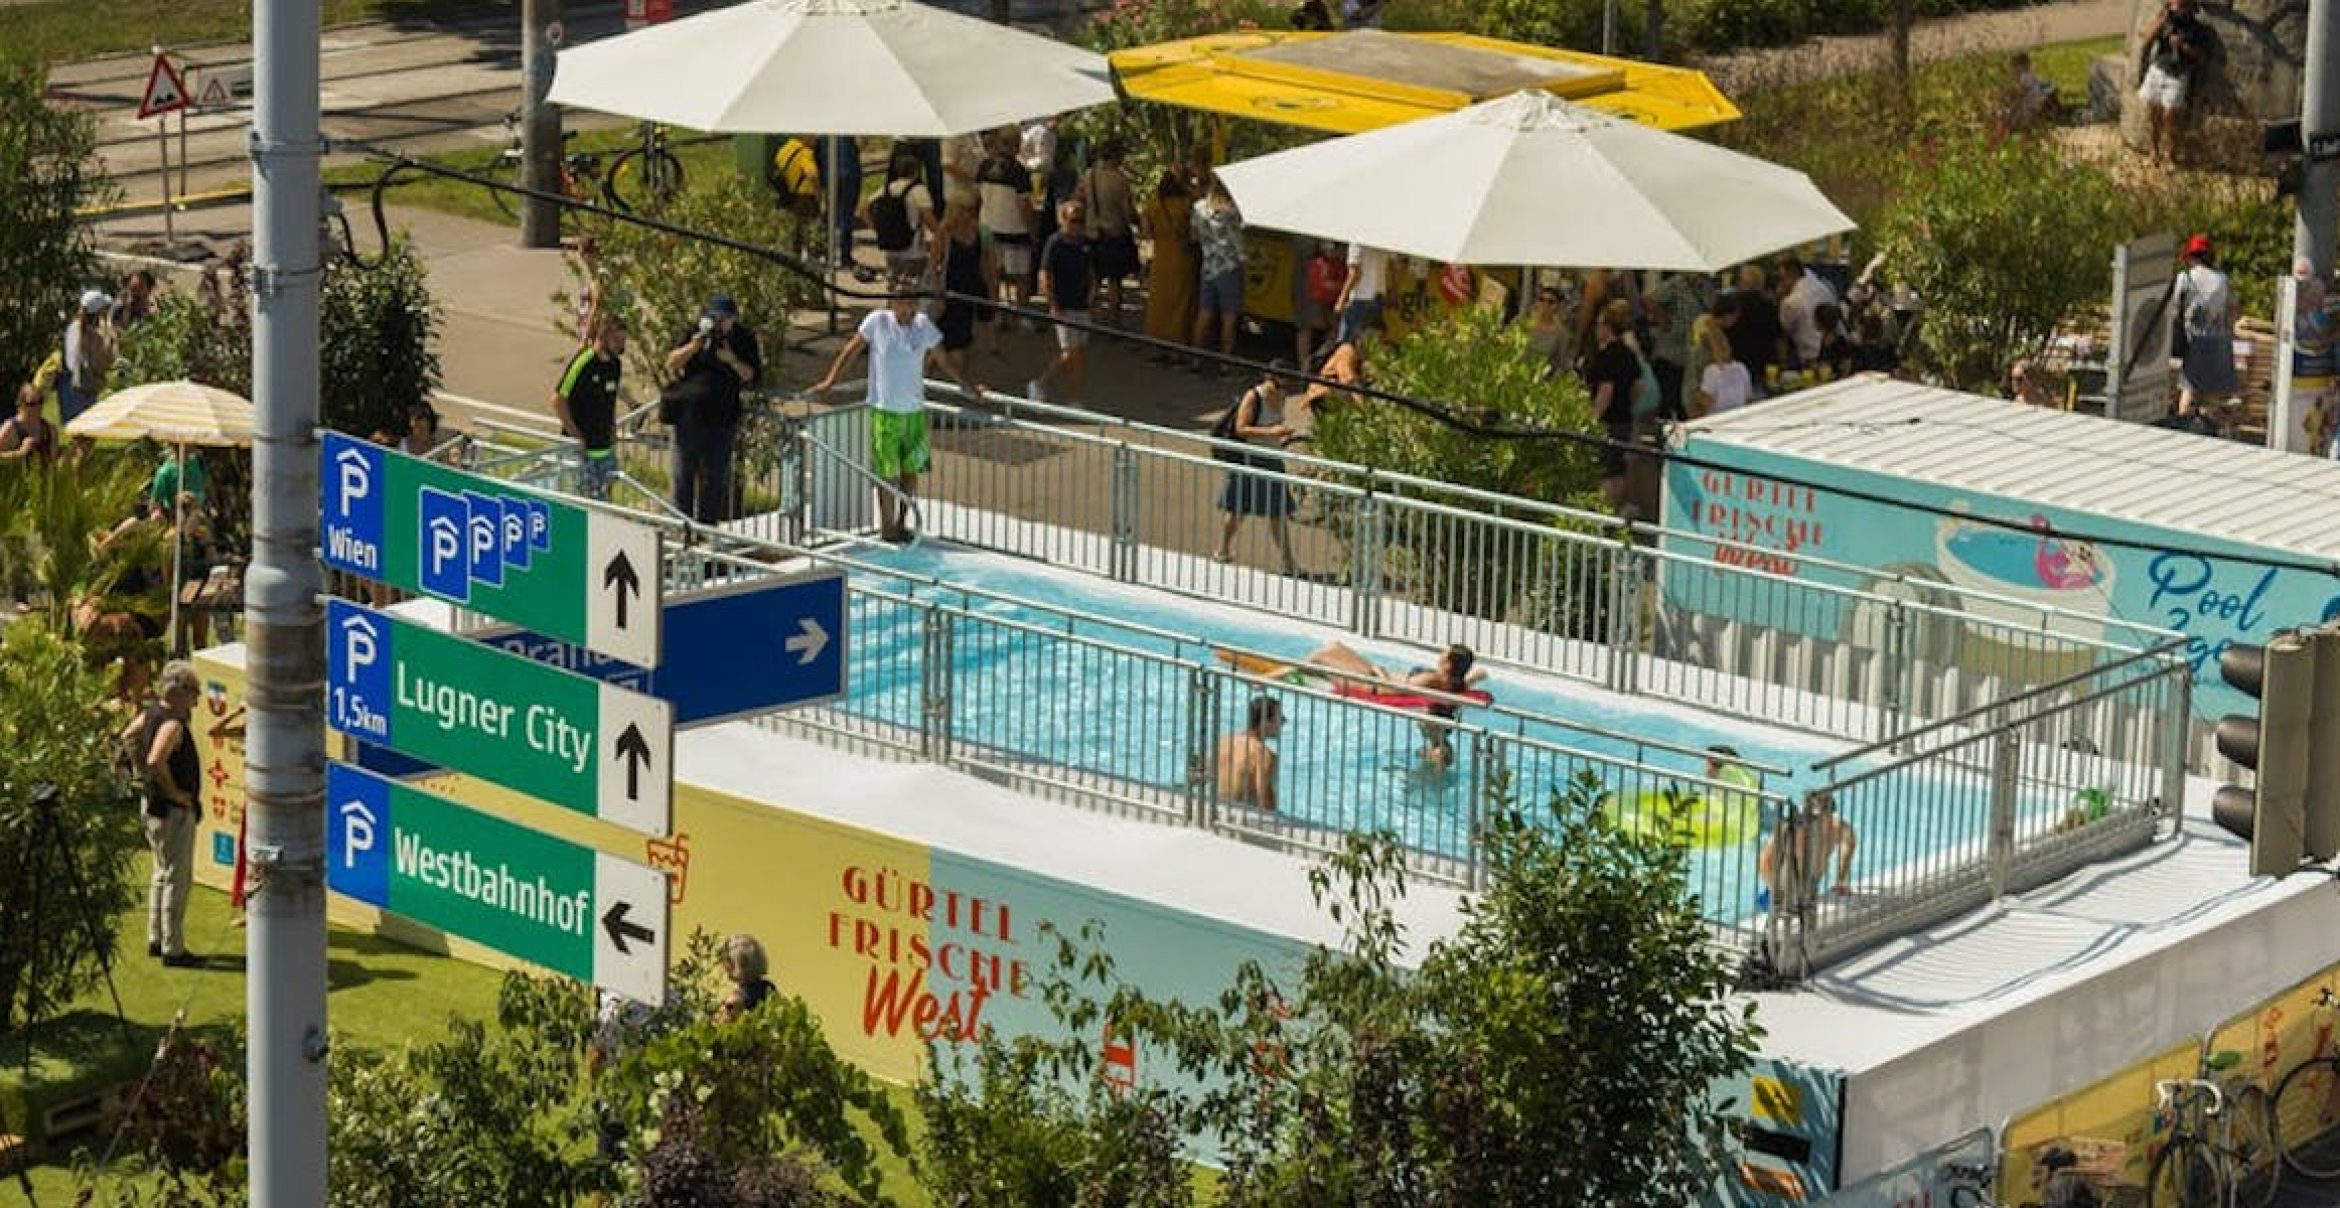 Baden, wo sonst Autos über den Beton brettern: In Wien gibt es jetzt einen Pop-up-Pool